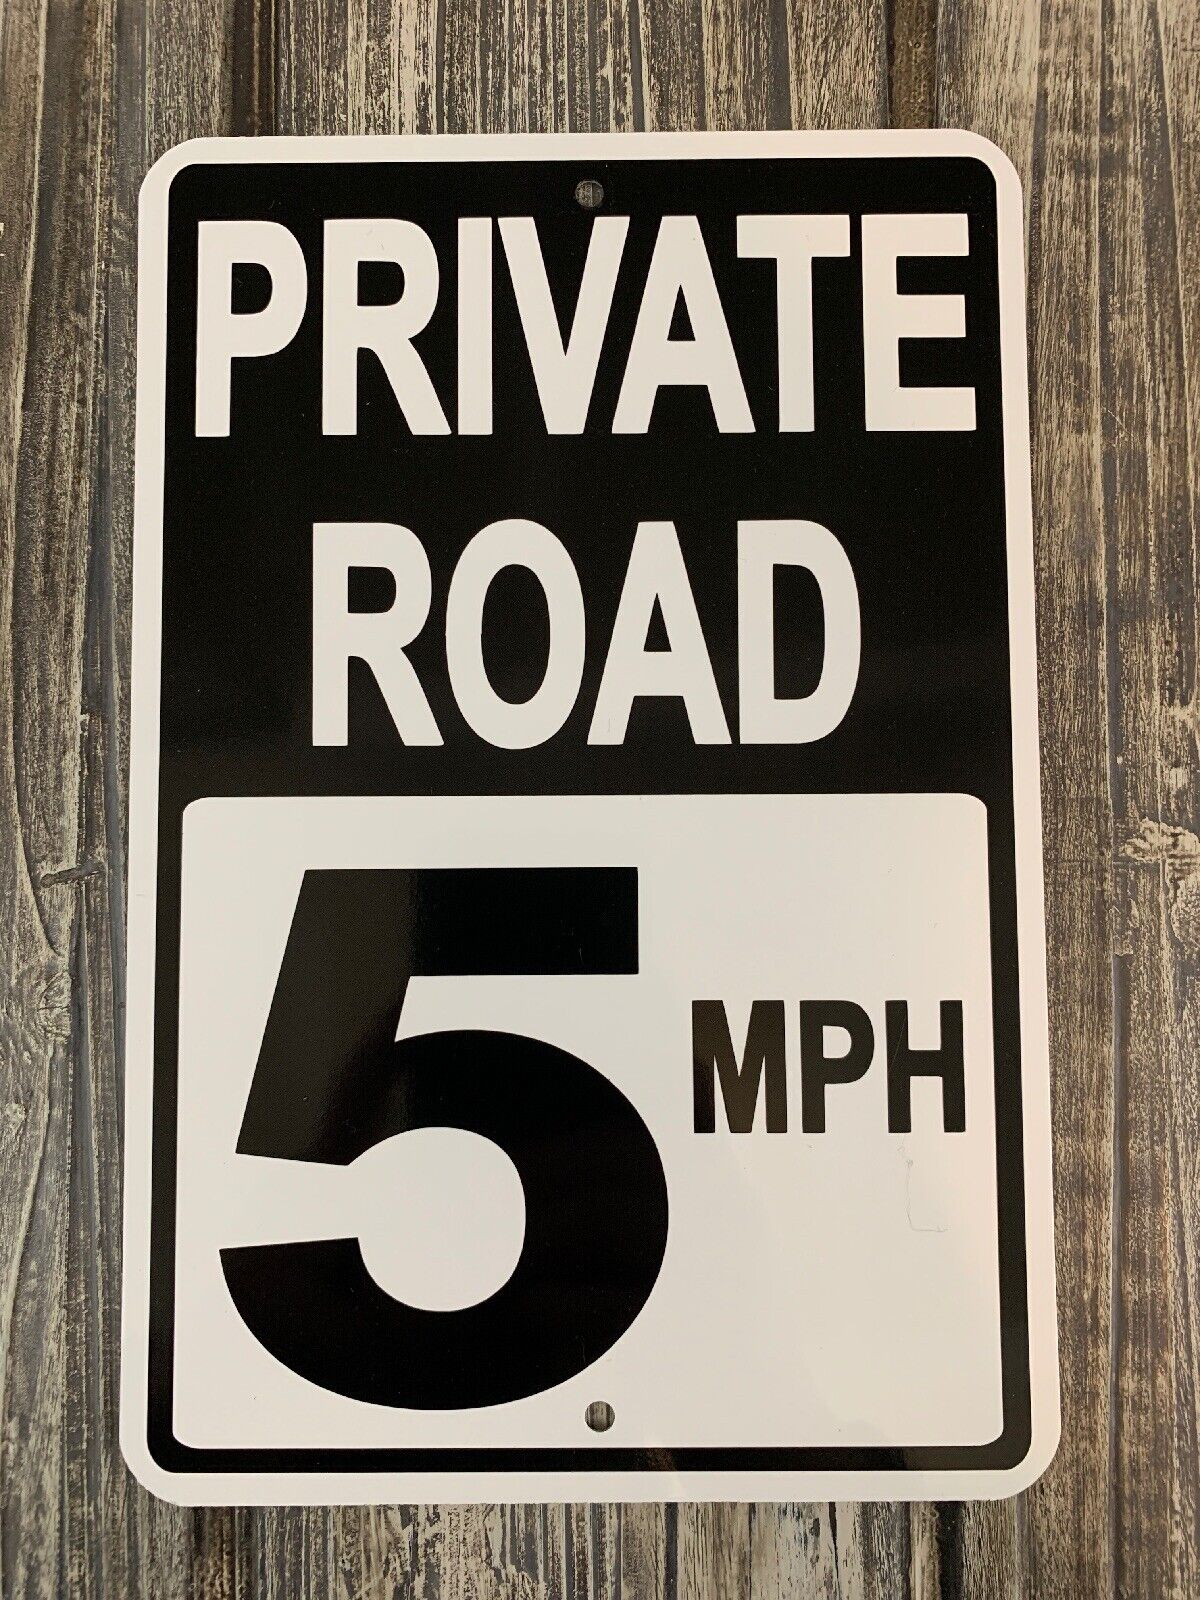 Private Road 5 mph Mini Metal Street Sign 6”x9” (NEW)